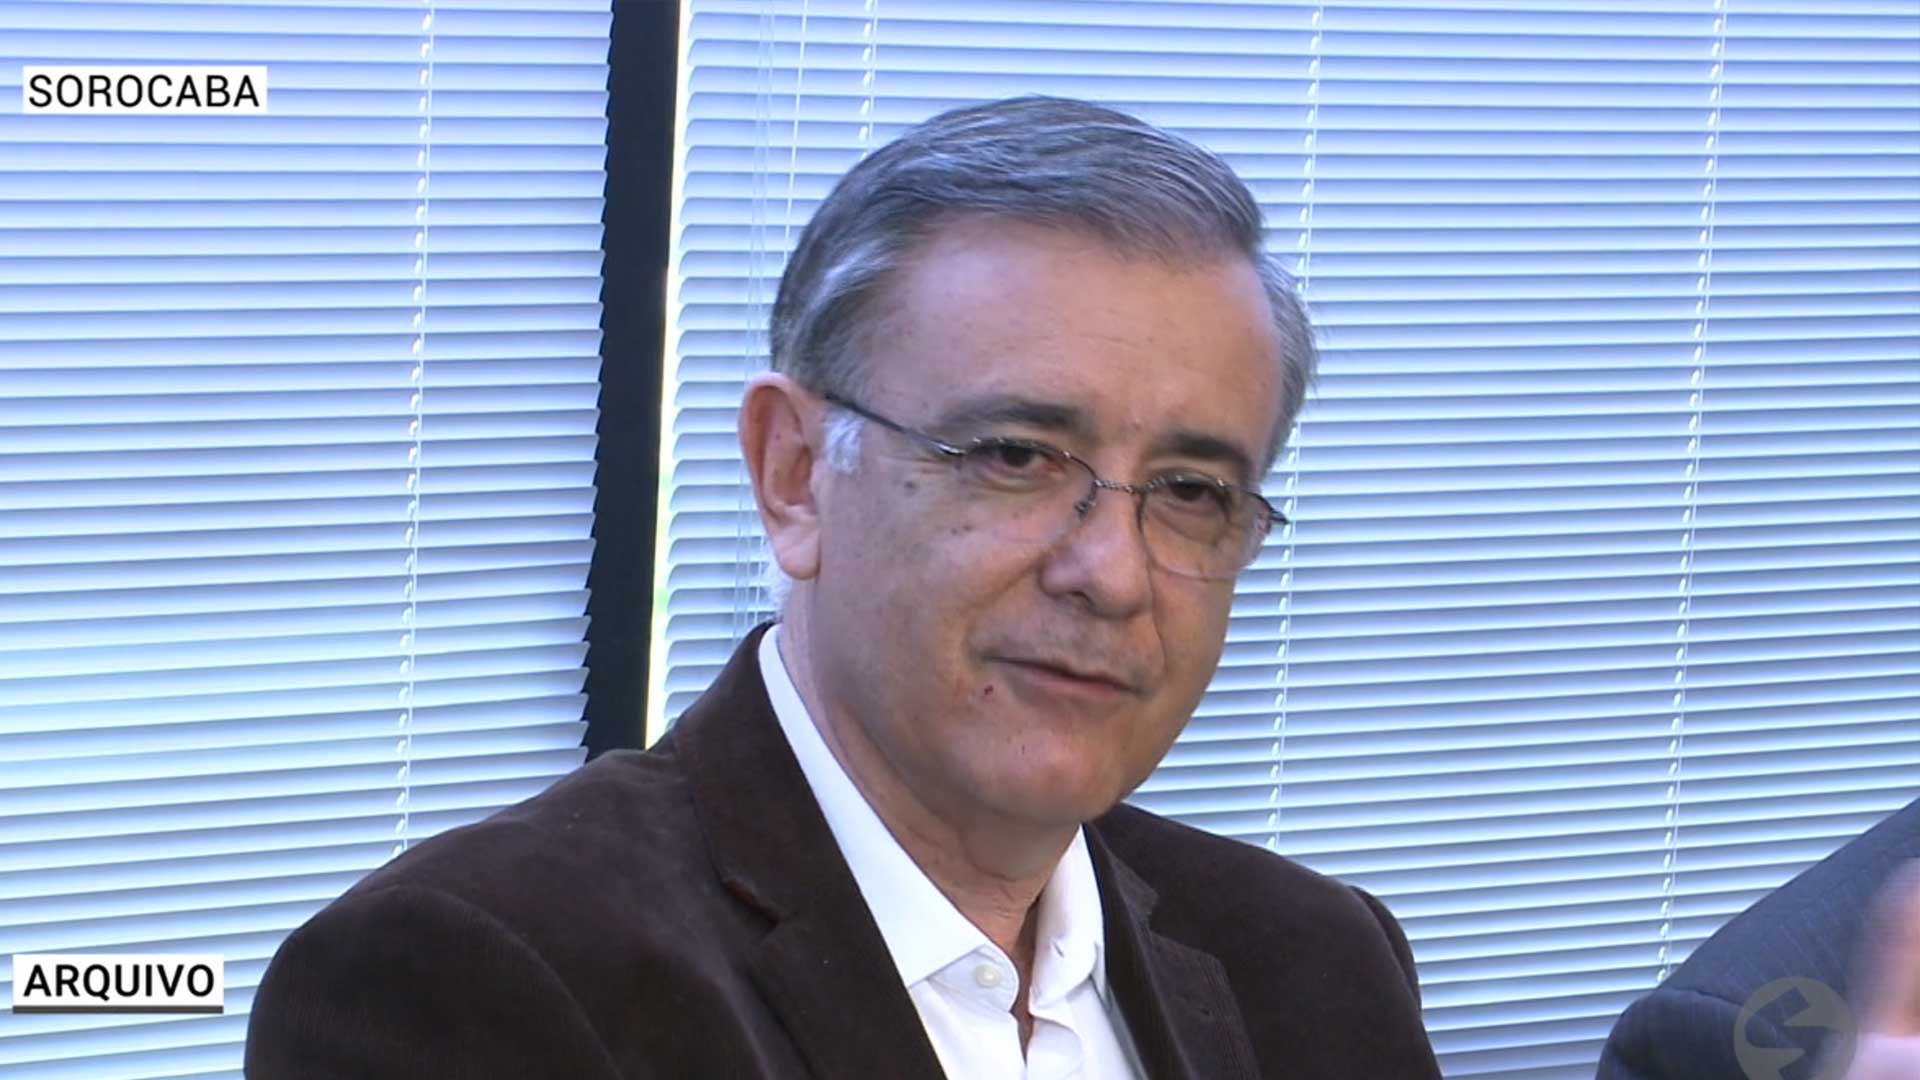 Ex-Prefeito de Sorocaba, José Crespo, tem recurso negado no STF.